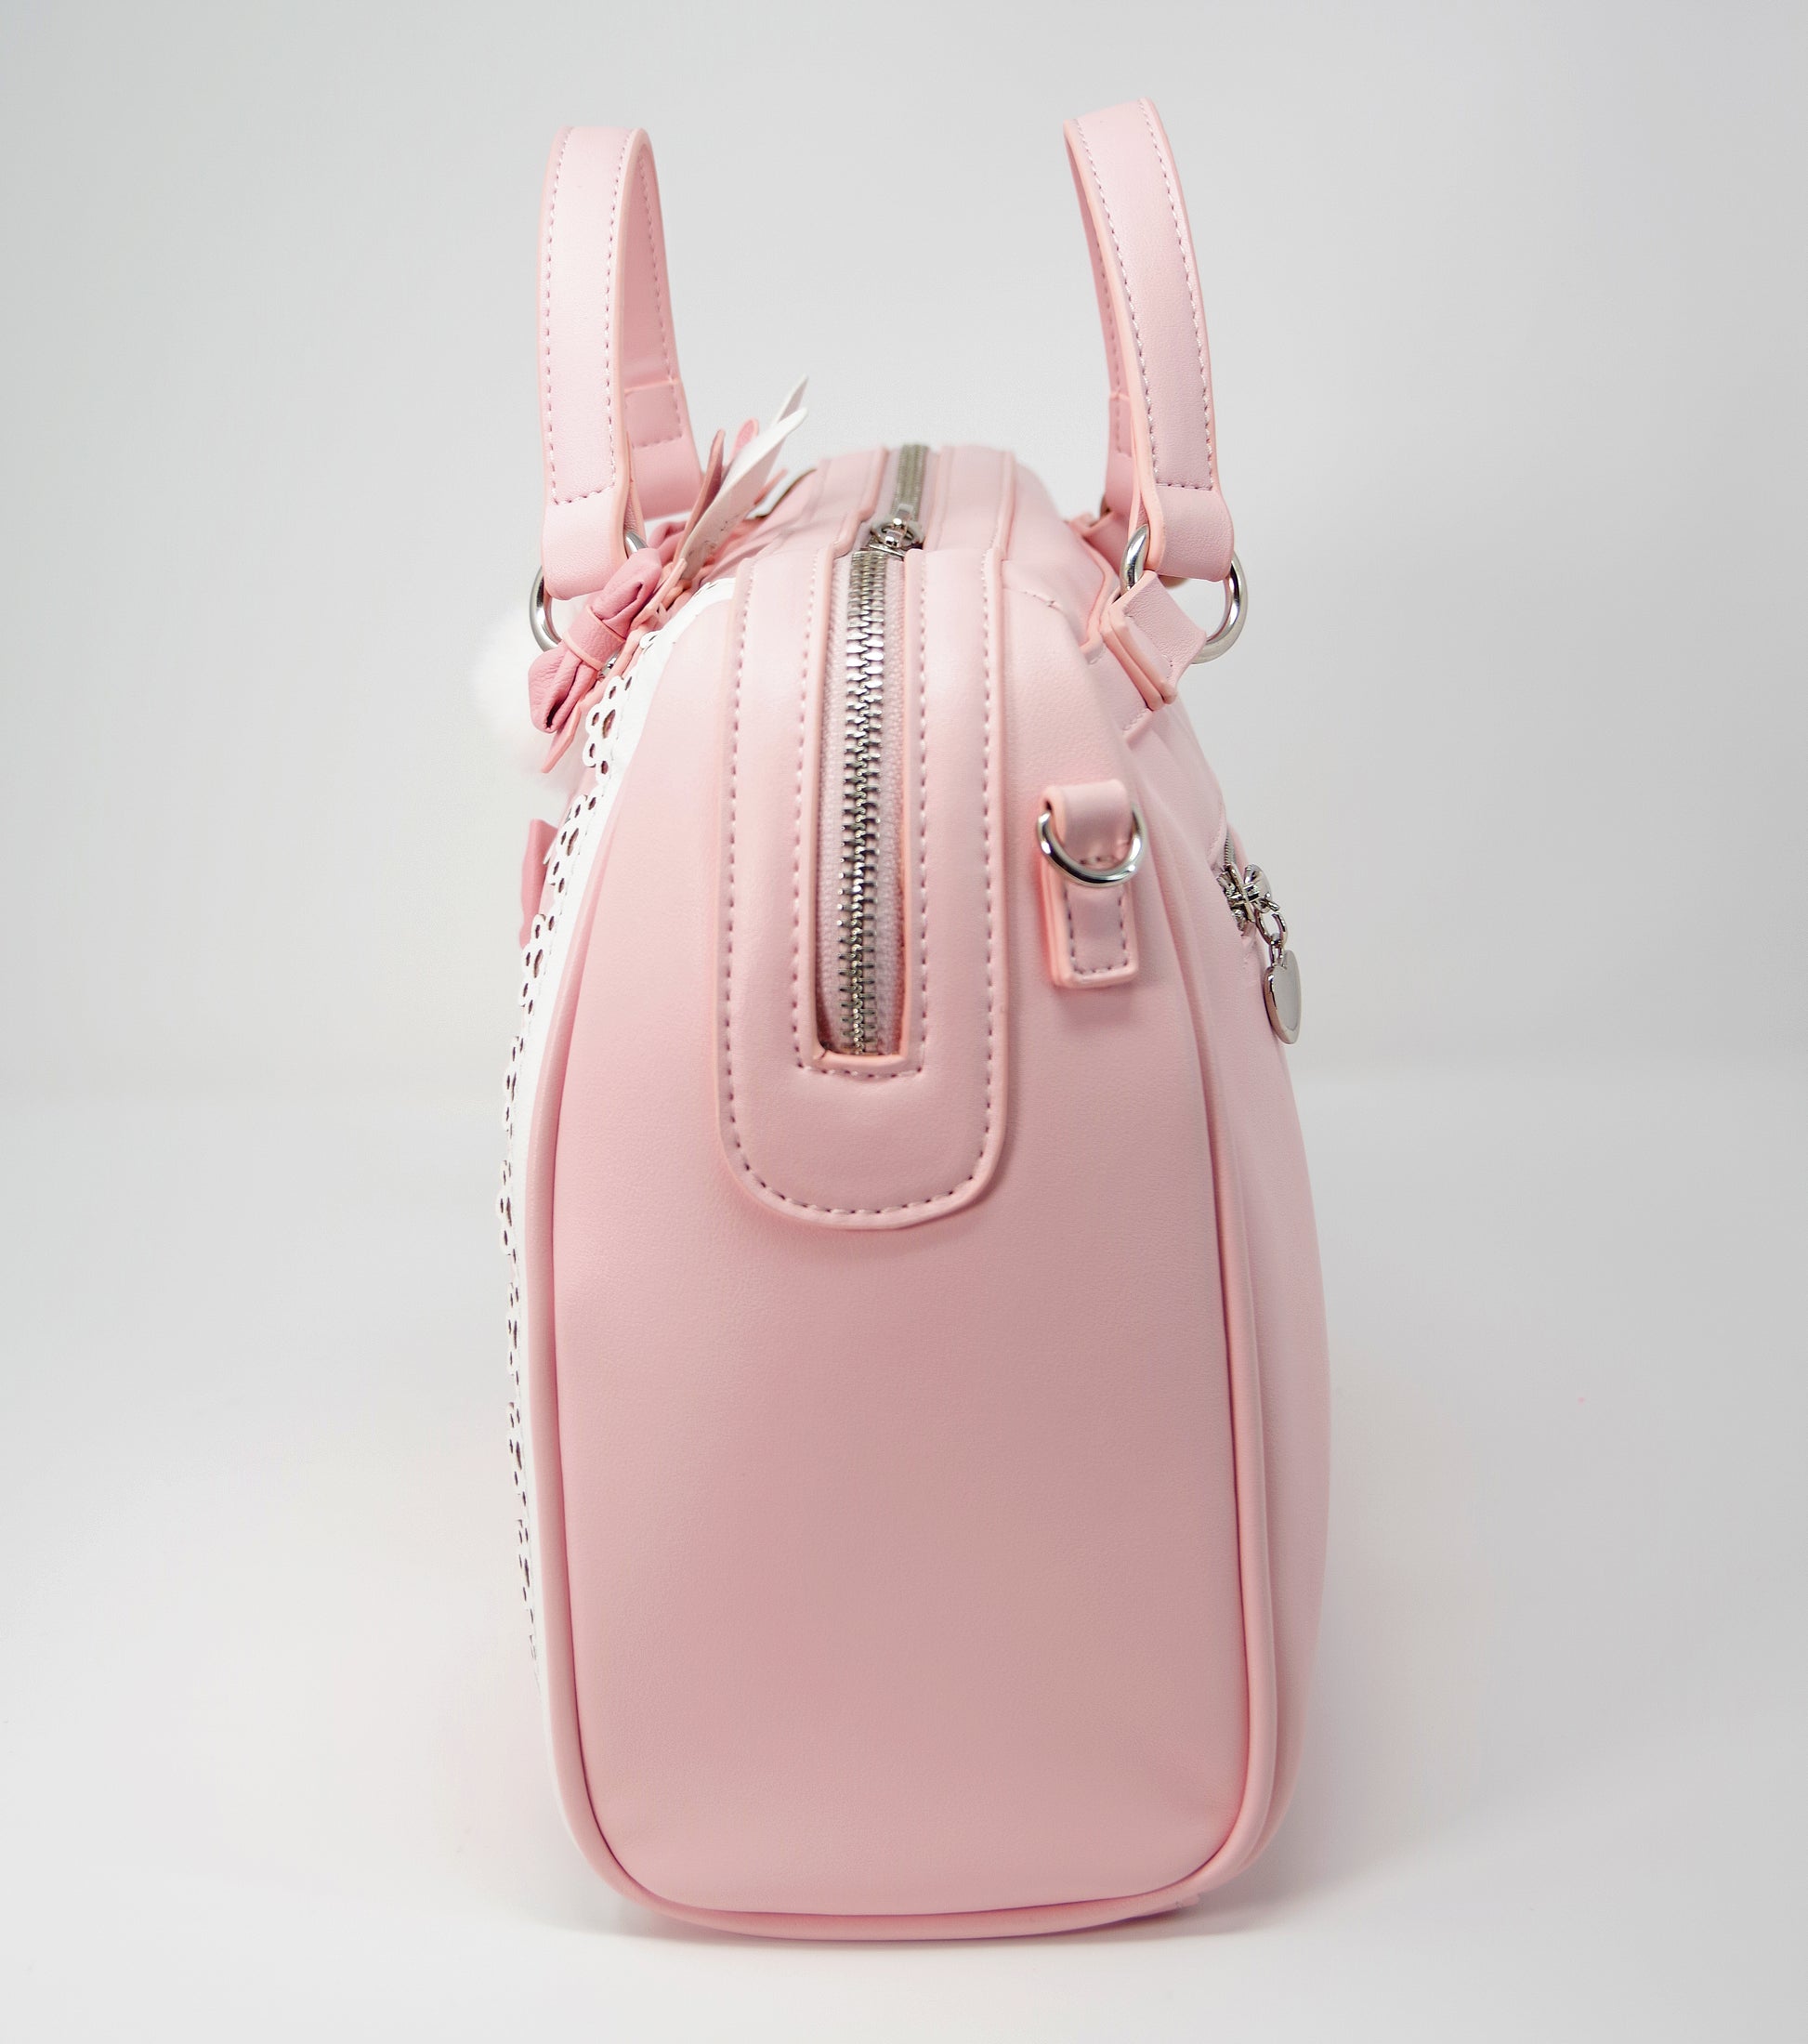 GUESS Bow Detail Handbags